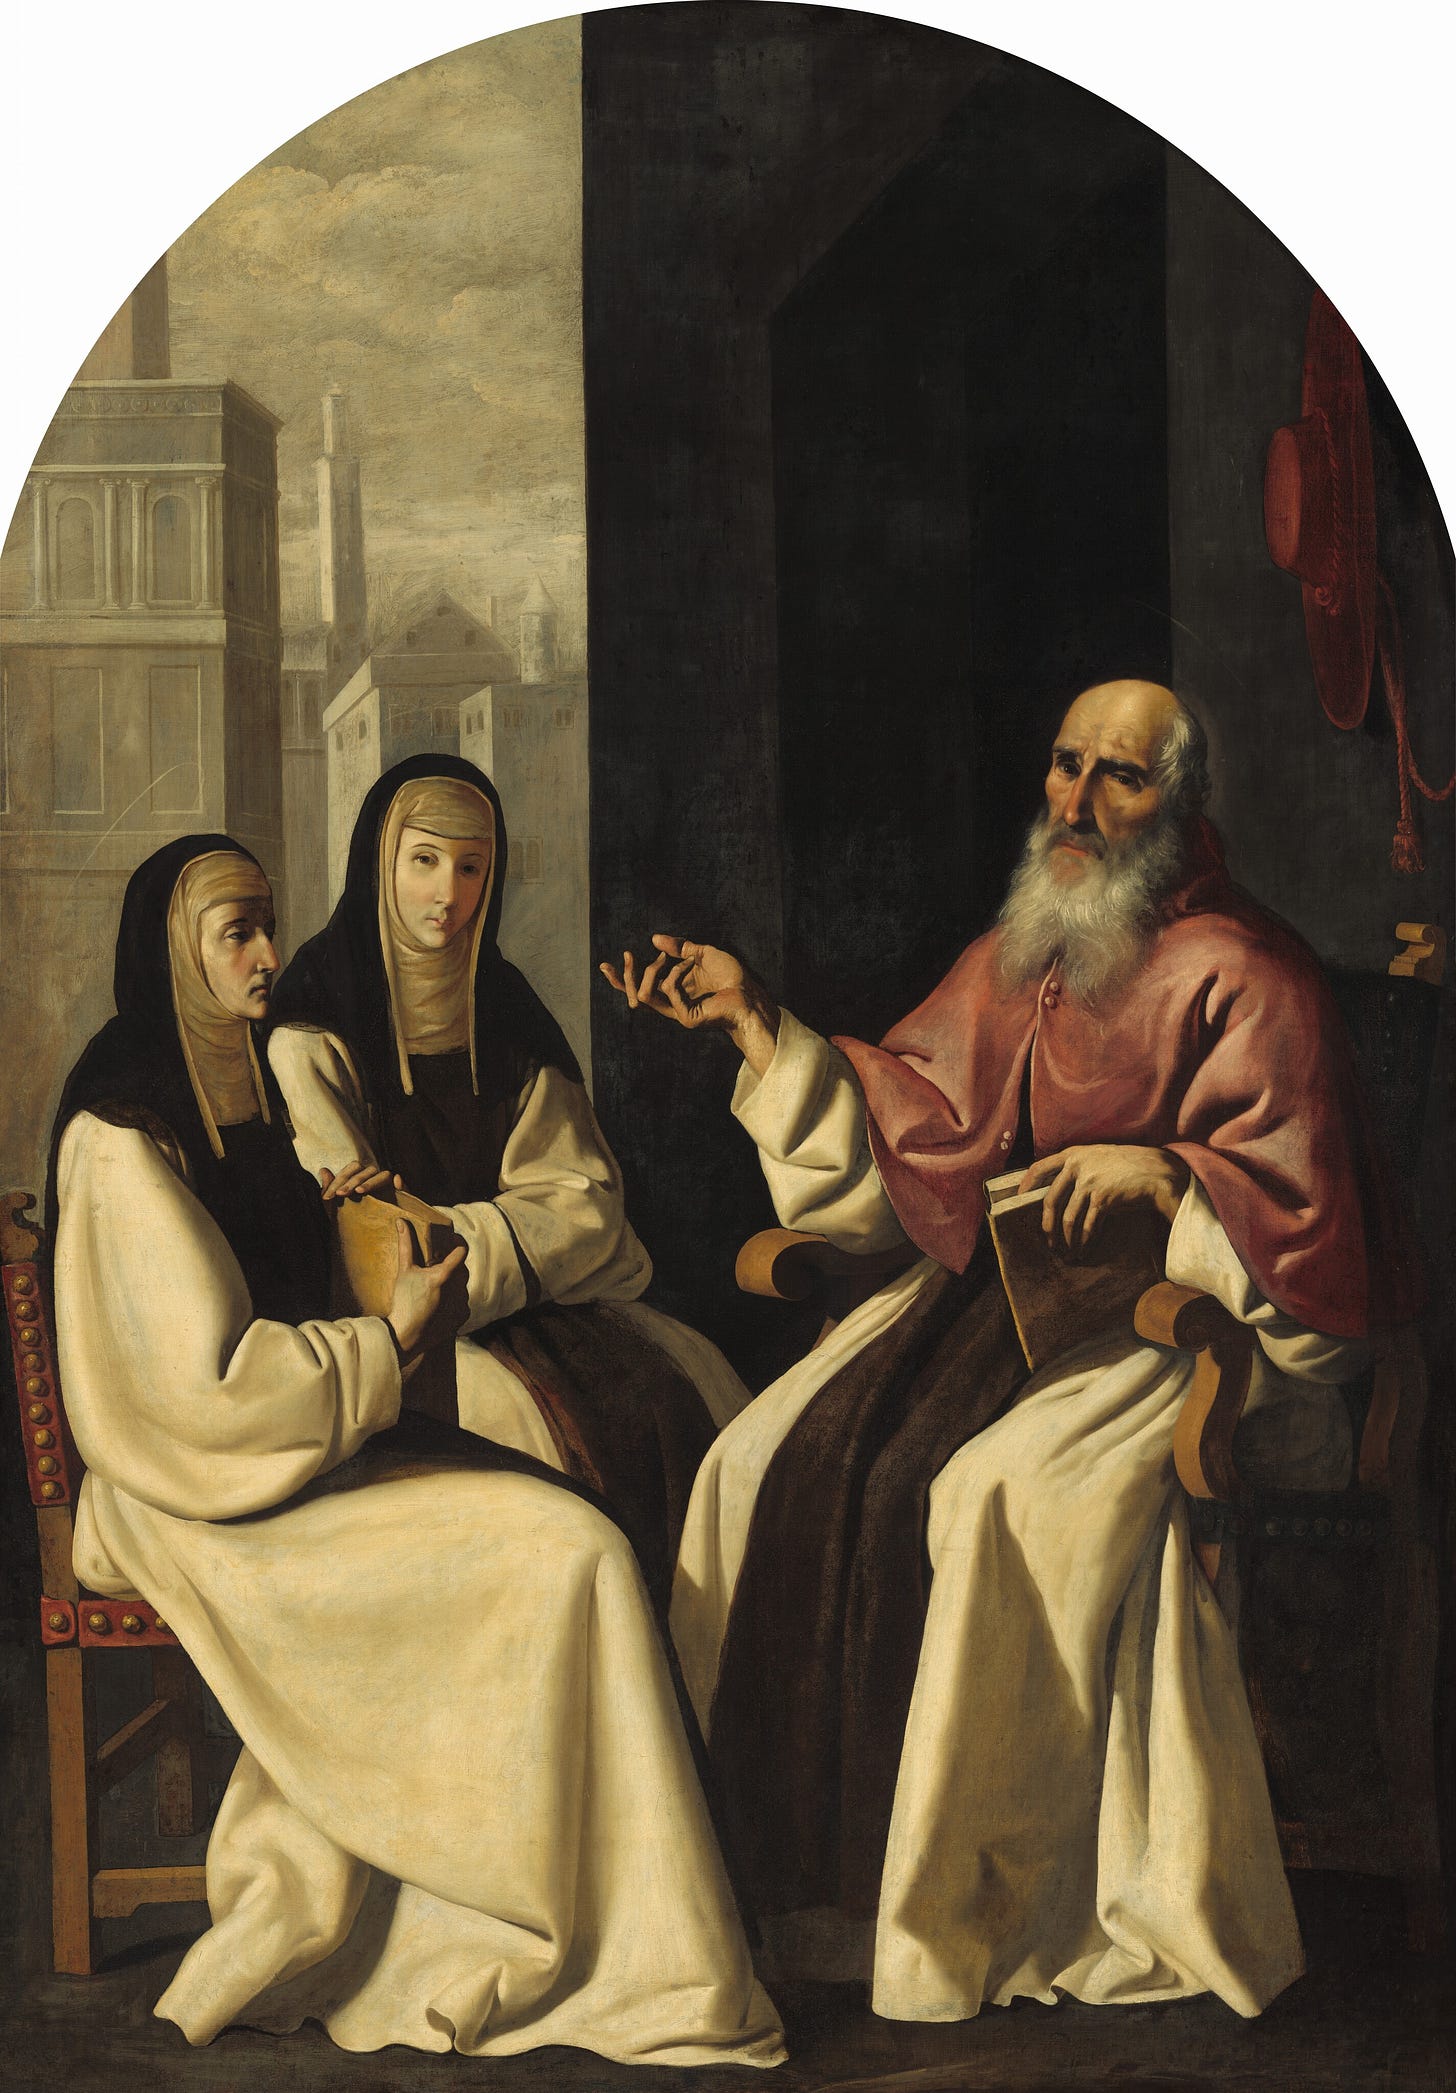 Saint Jerome with Saint Paula and Saint Eustochium, c. 1640/1650 by Francisco de Zurbarán and Workshop